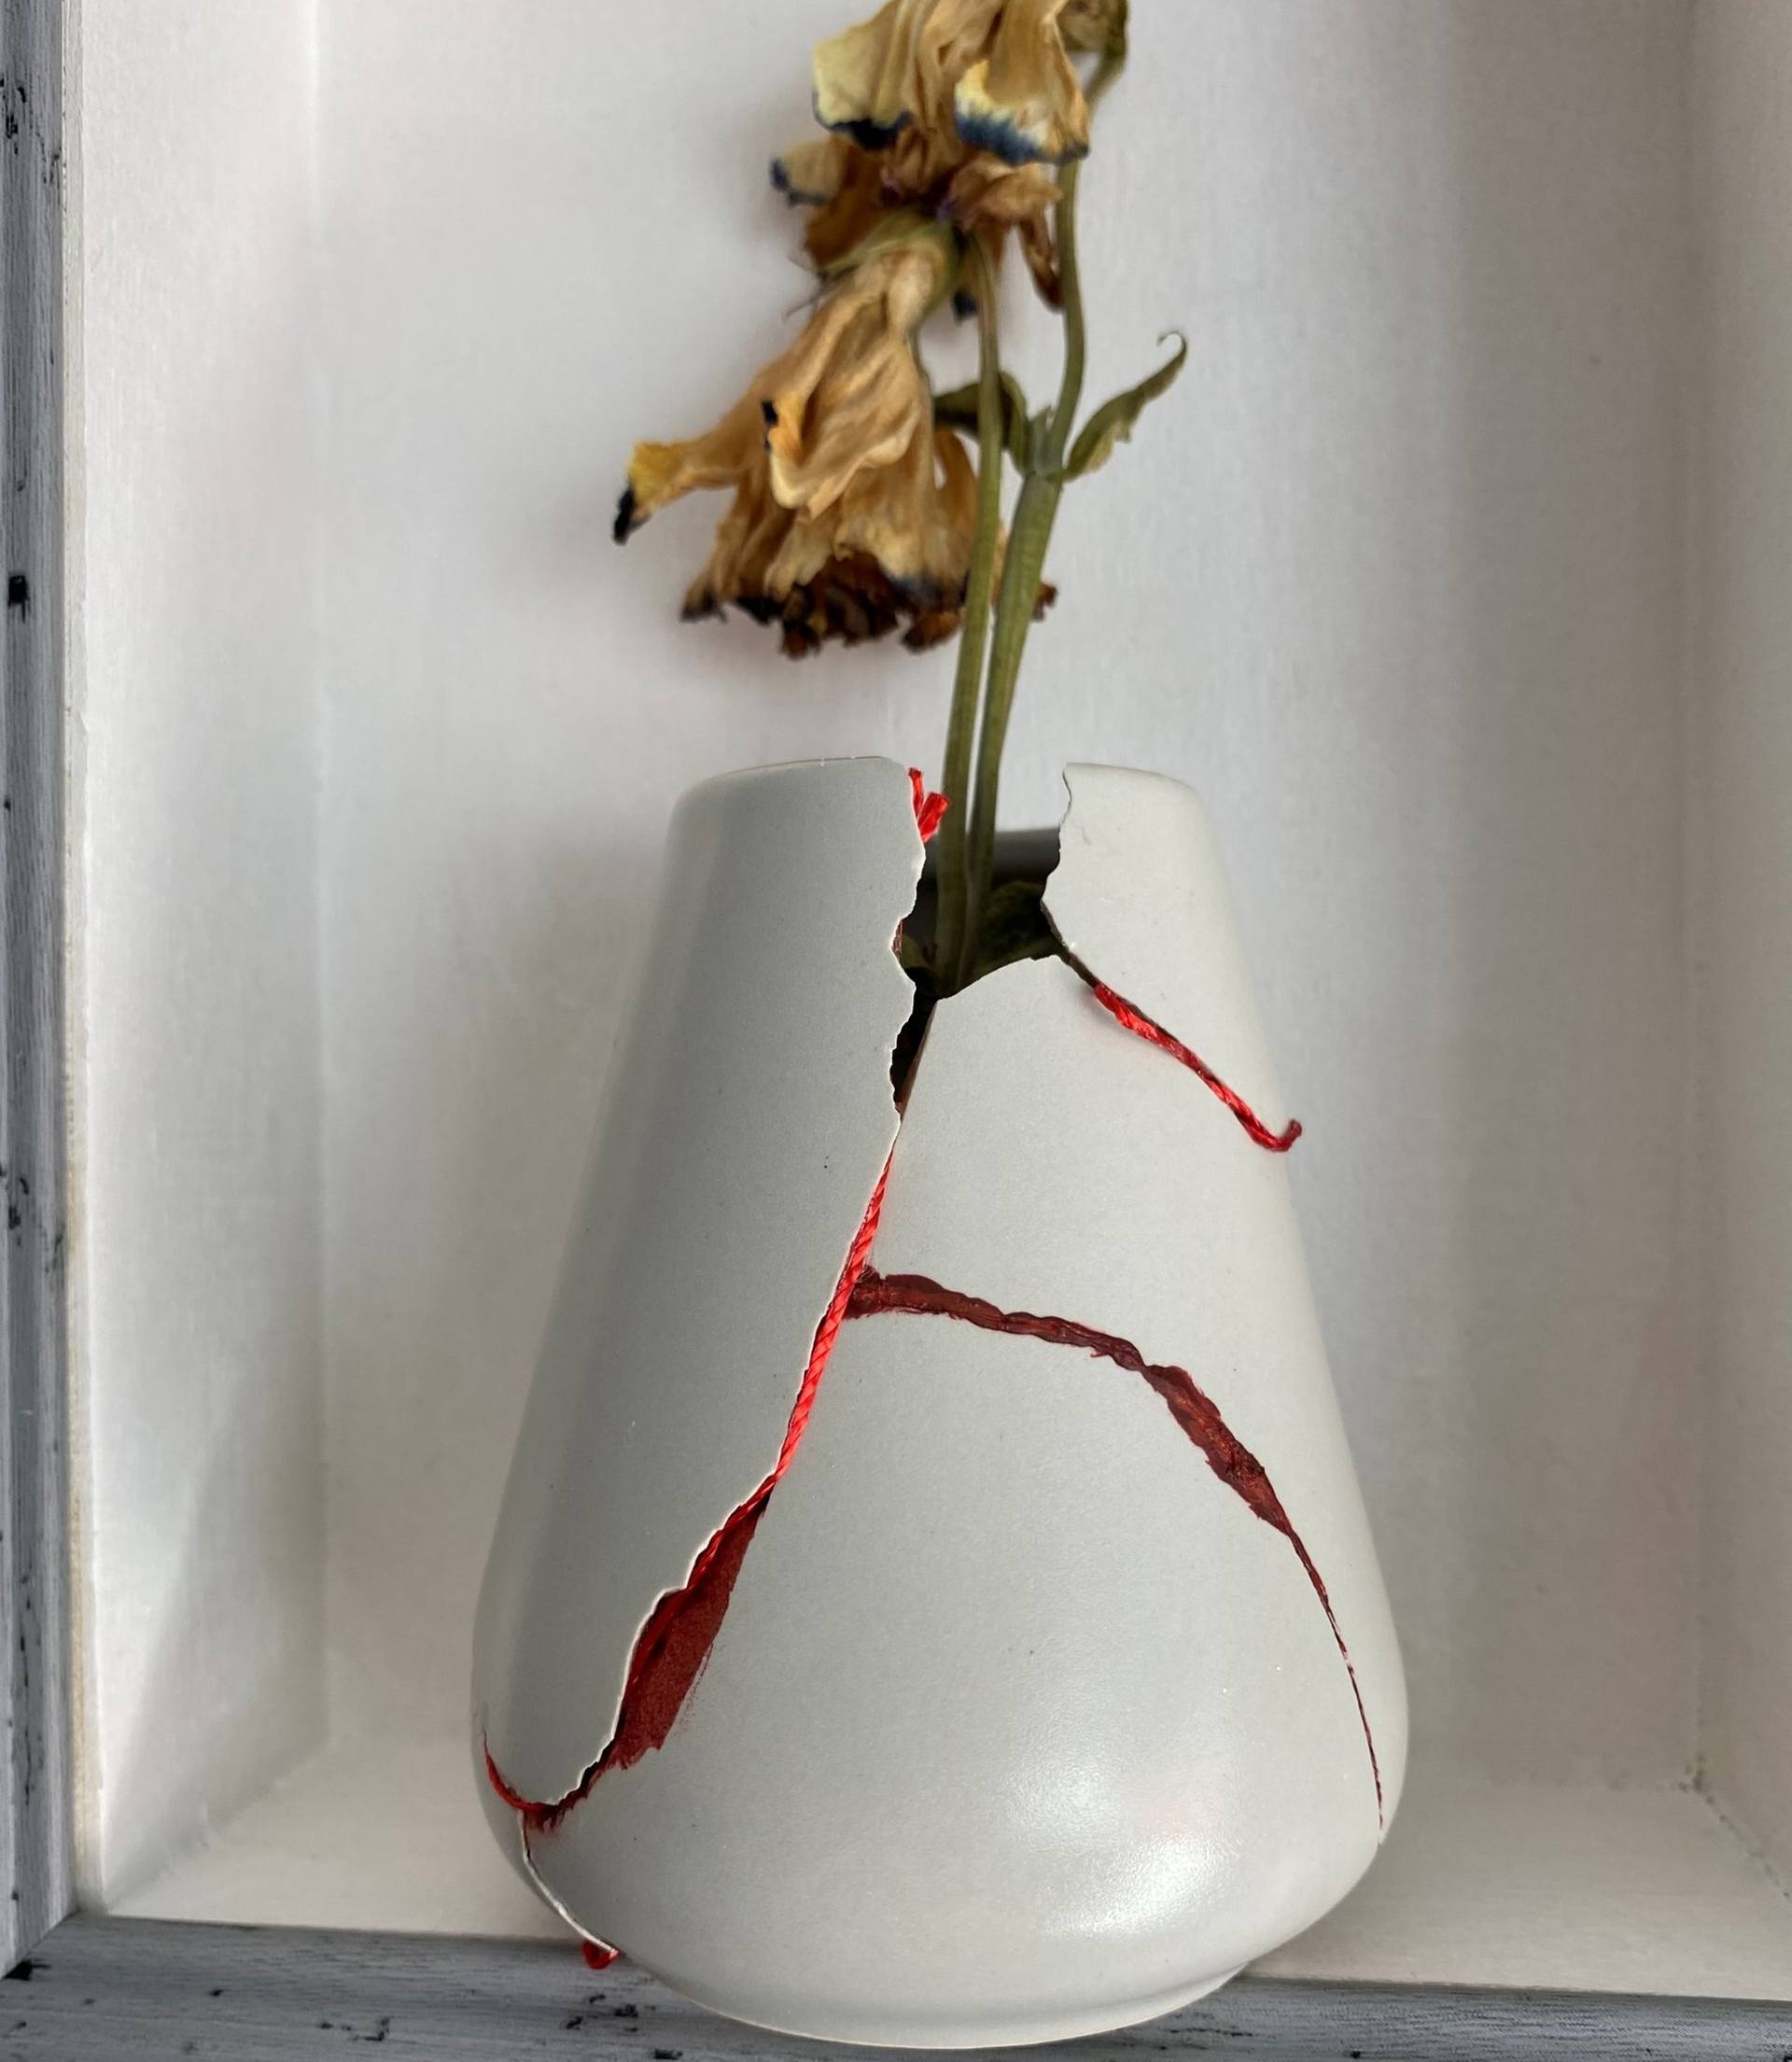 broken vase picture